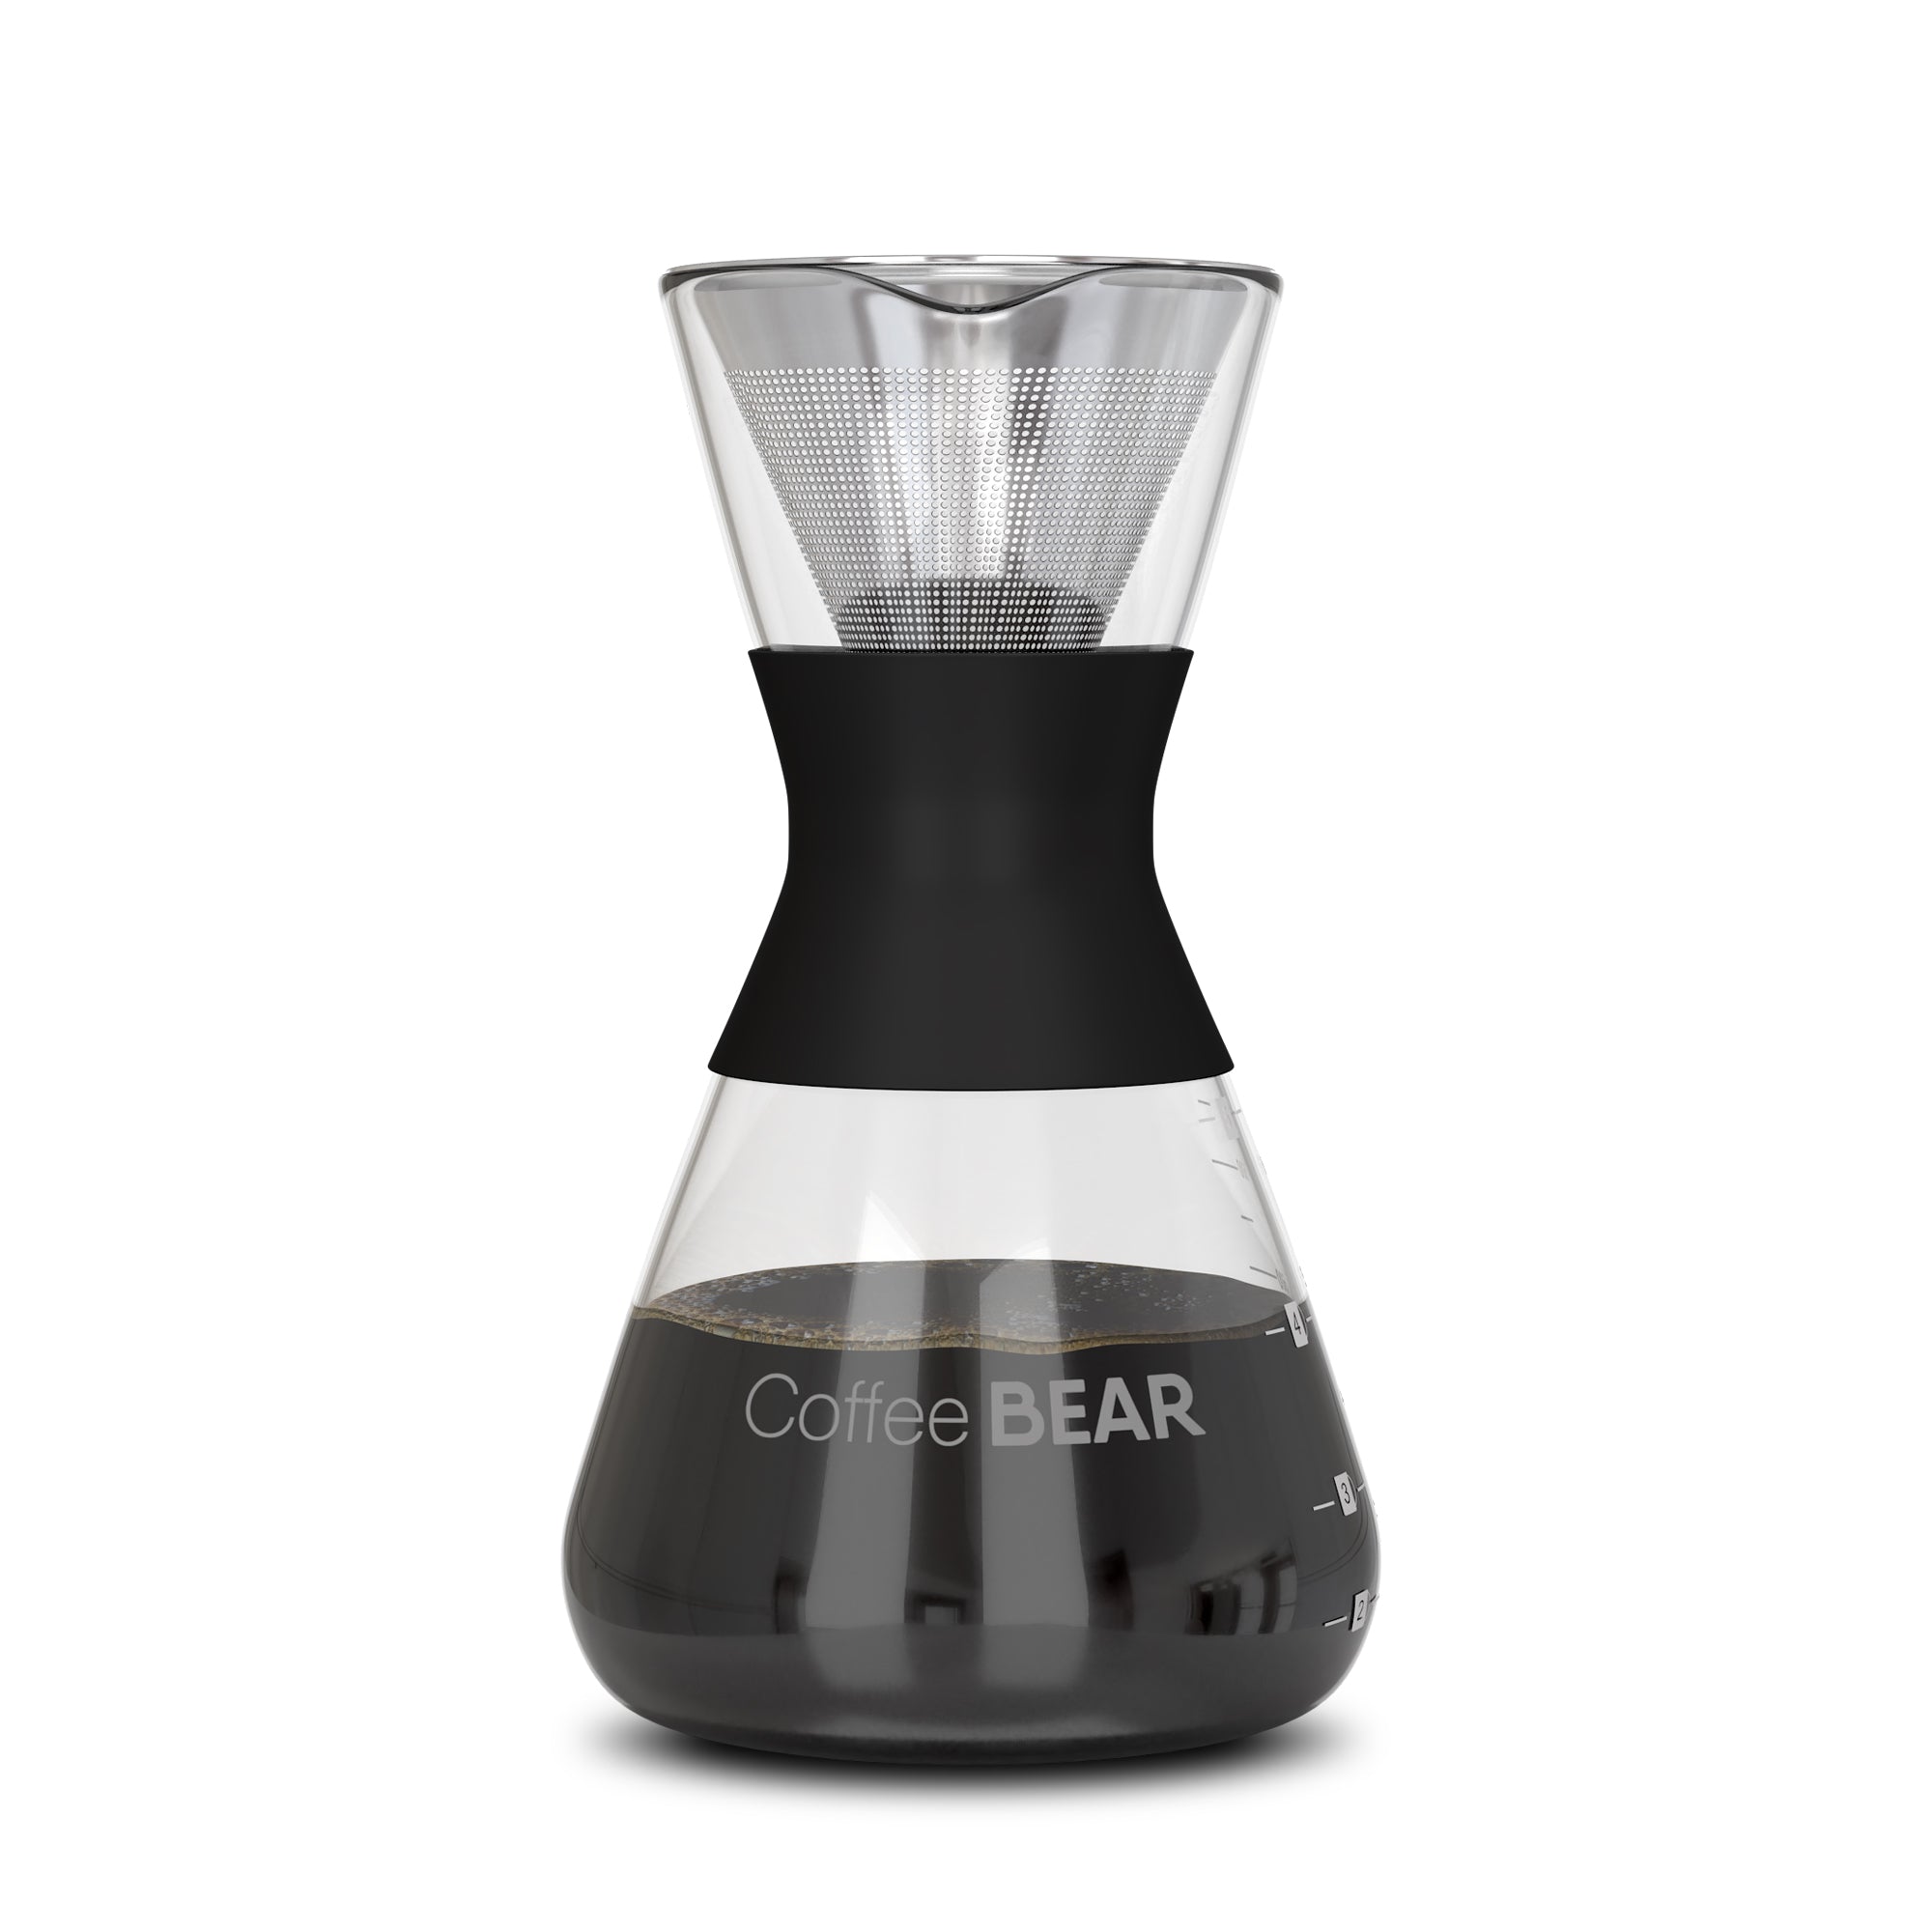 pour over coffee maker set glass carafe 600ml No Filter